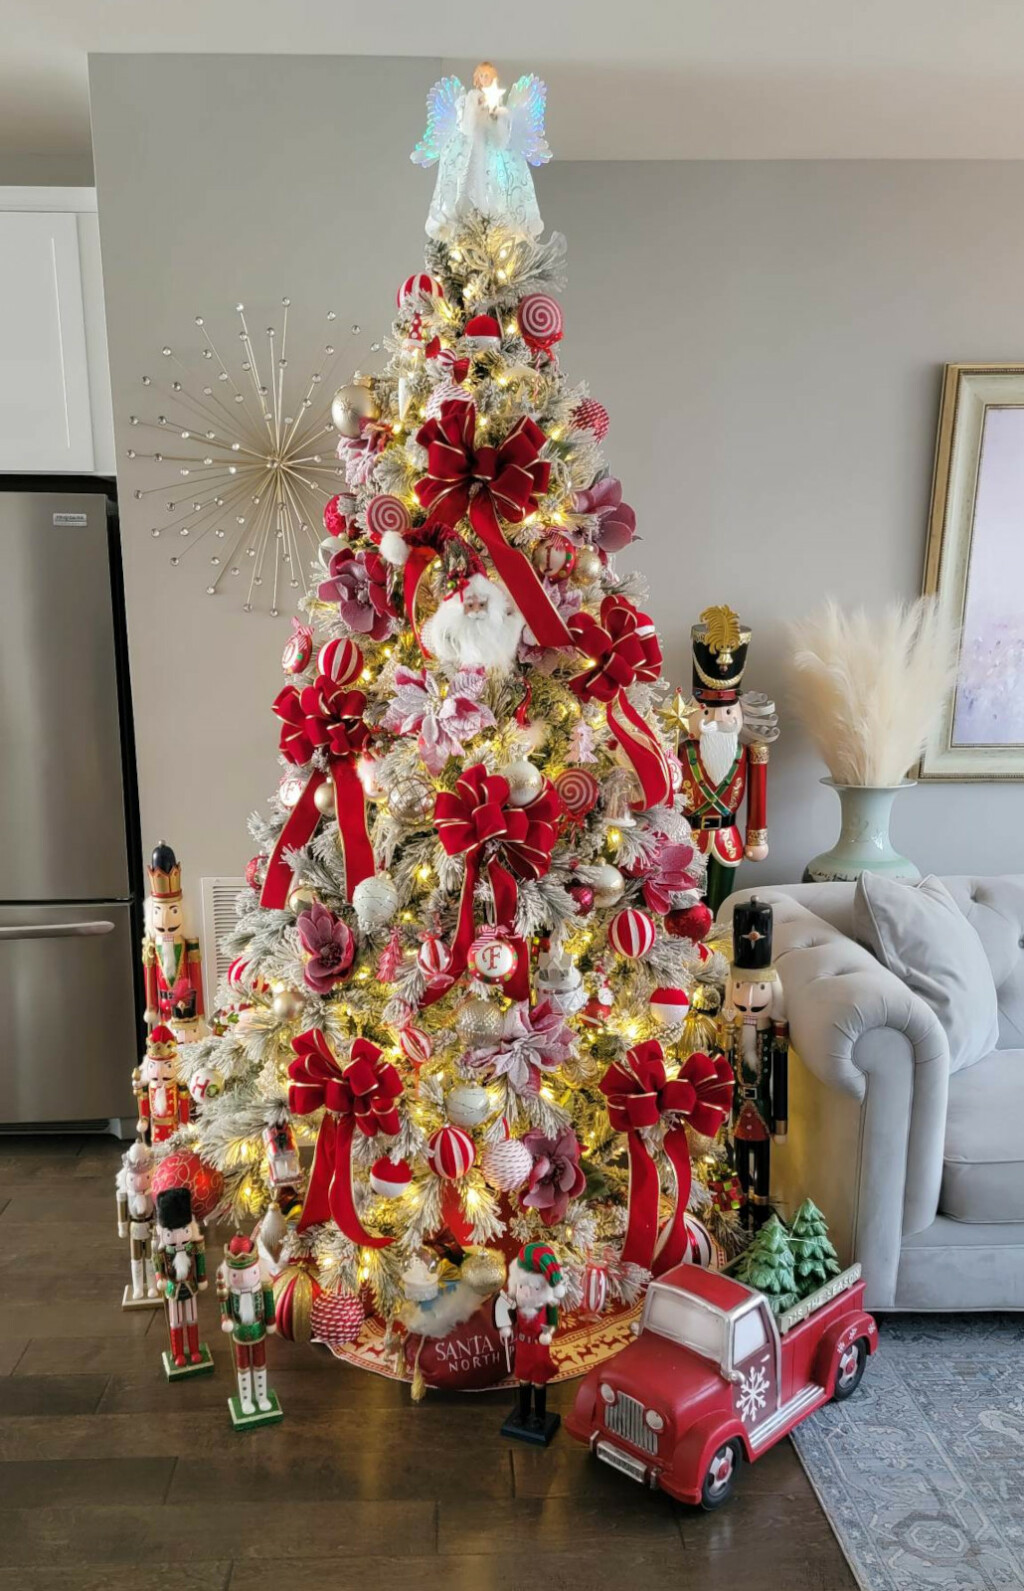 Ines iz St. Louisa u SAD-u obišla je trgovina s vrlo bogatim božićnim asortimanom